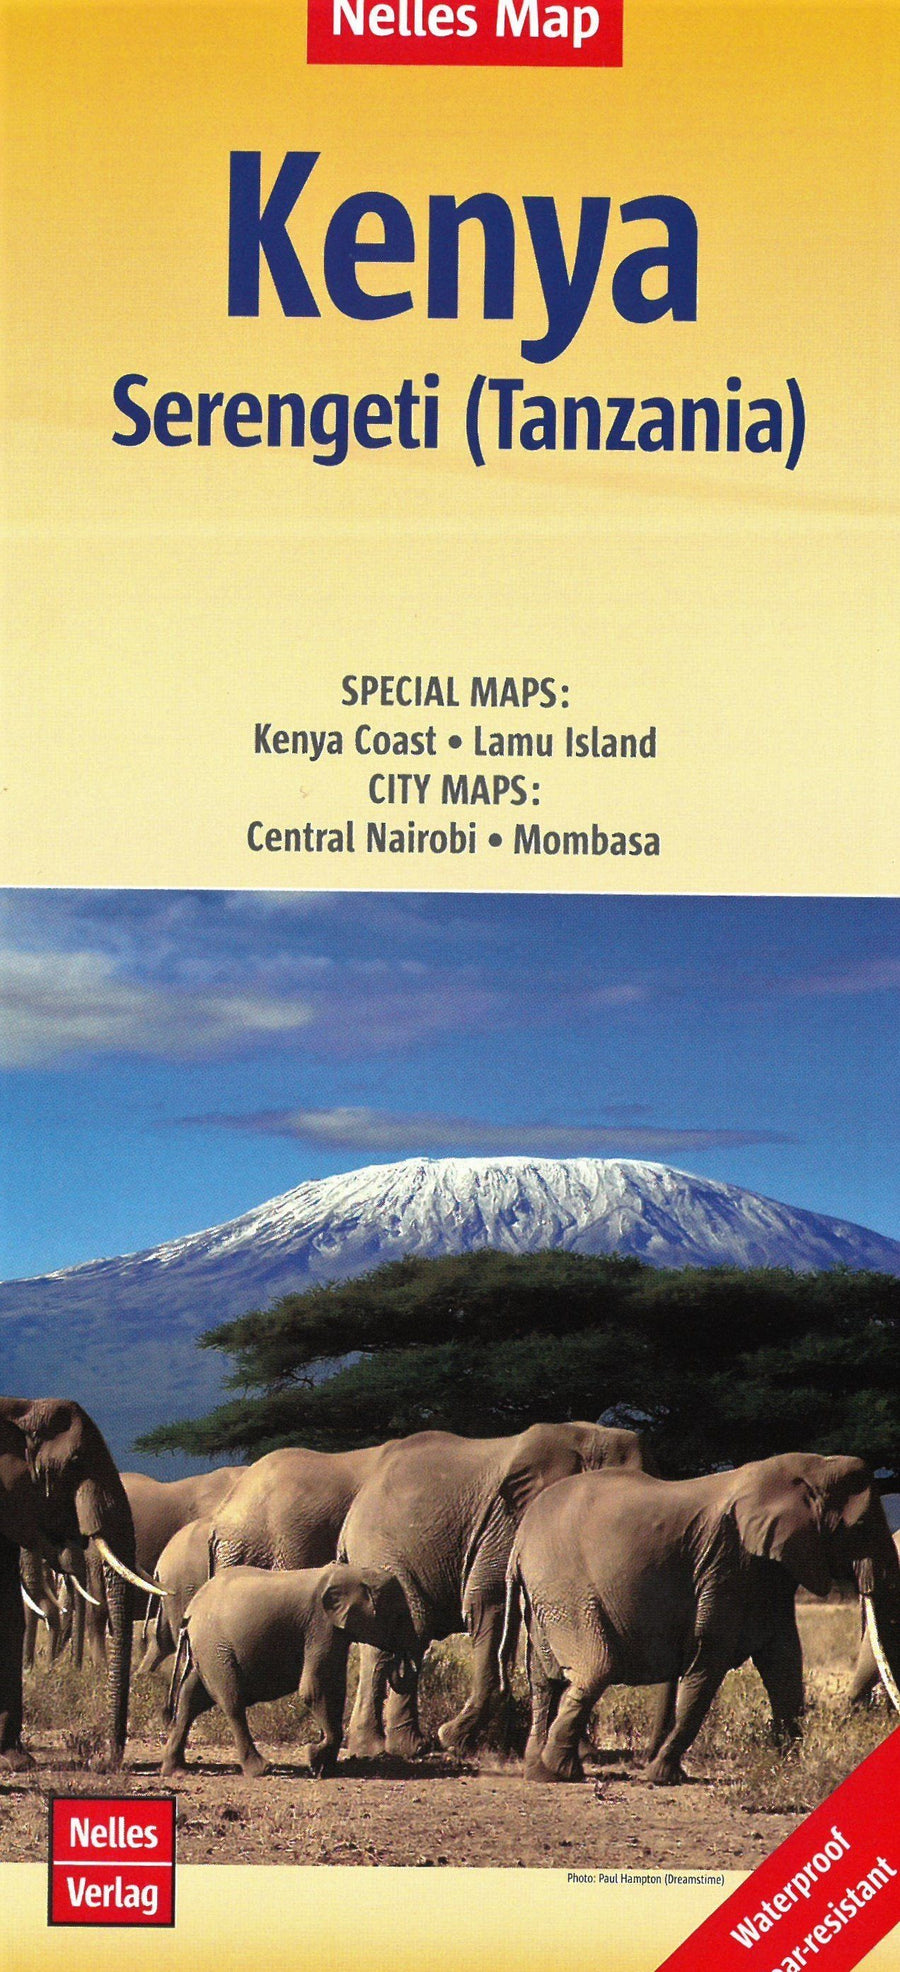 Carte routière imperméable - Kenya & Parc Serengeti (Tanzanie) | Nelles Map carte pliée Nelles Verlag 